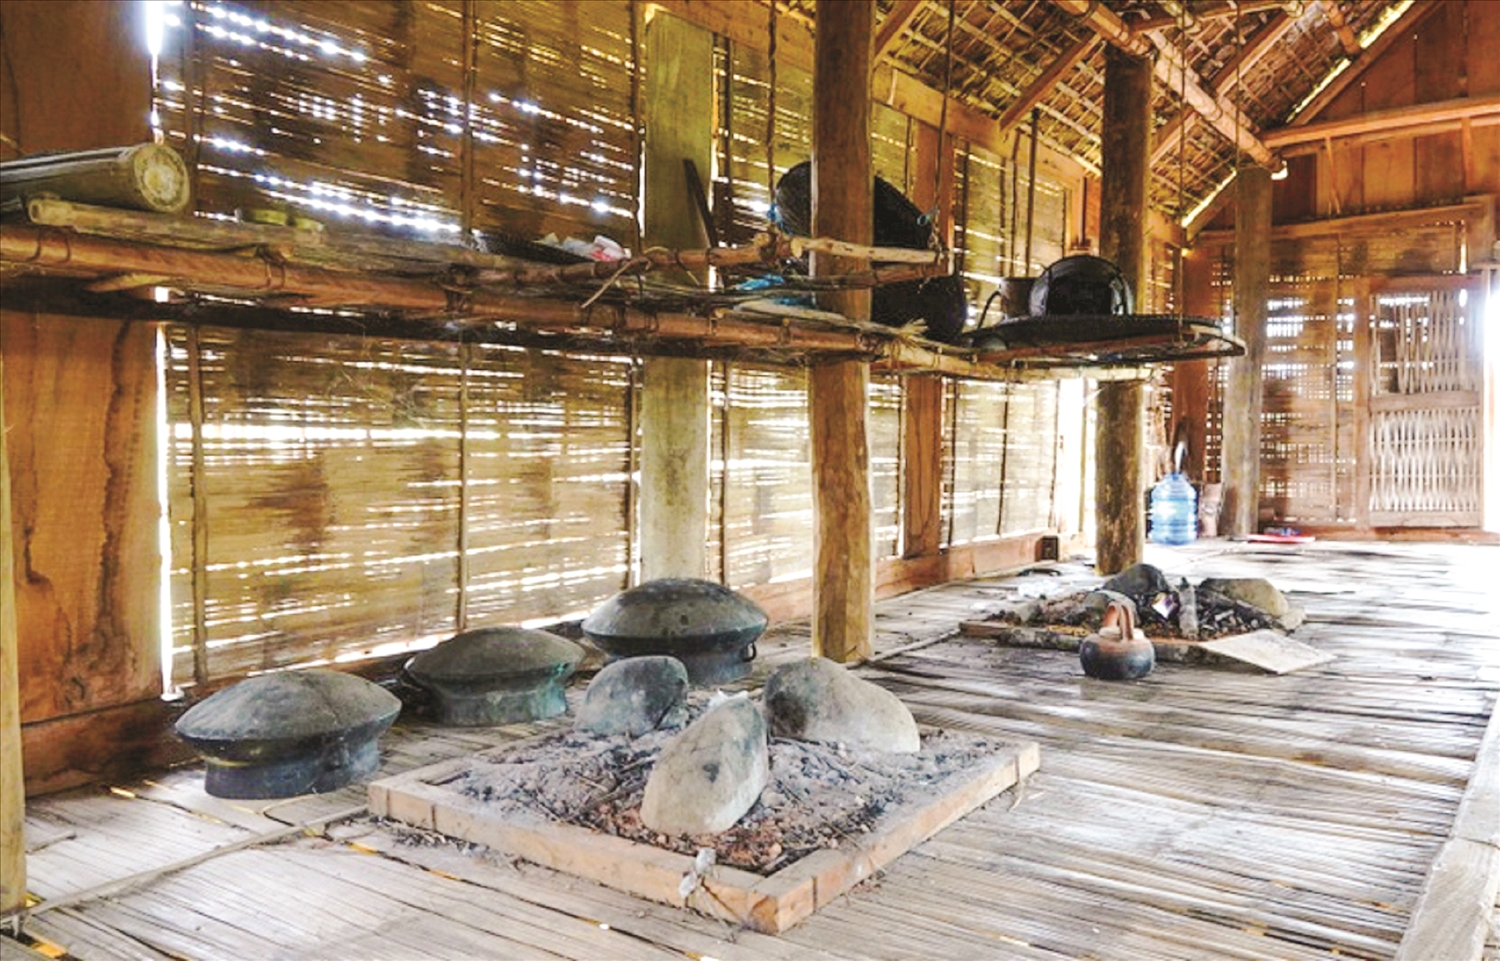 Khu Bảo tồn và phát huy giá trị văn hóa Làng Teng, xã Ba Thành xuống cấp trầm trọng. Các vách ngăn, sàn nhà bằng tre, nứa của 3 nhà sàn truyền thống hầu hết đã bị mục.